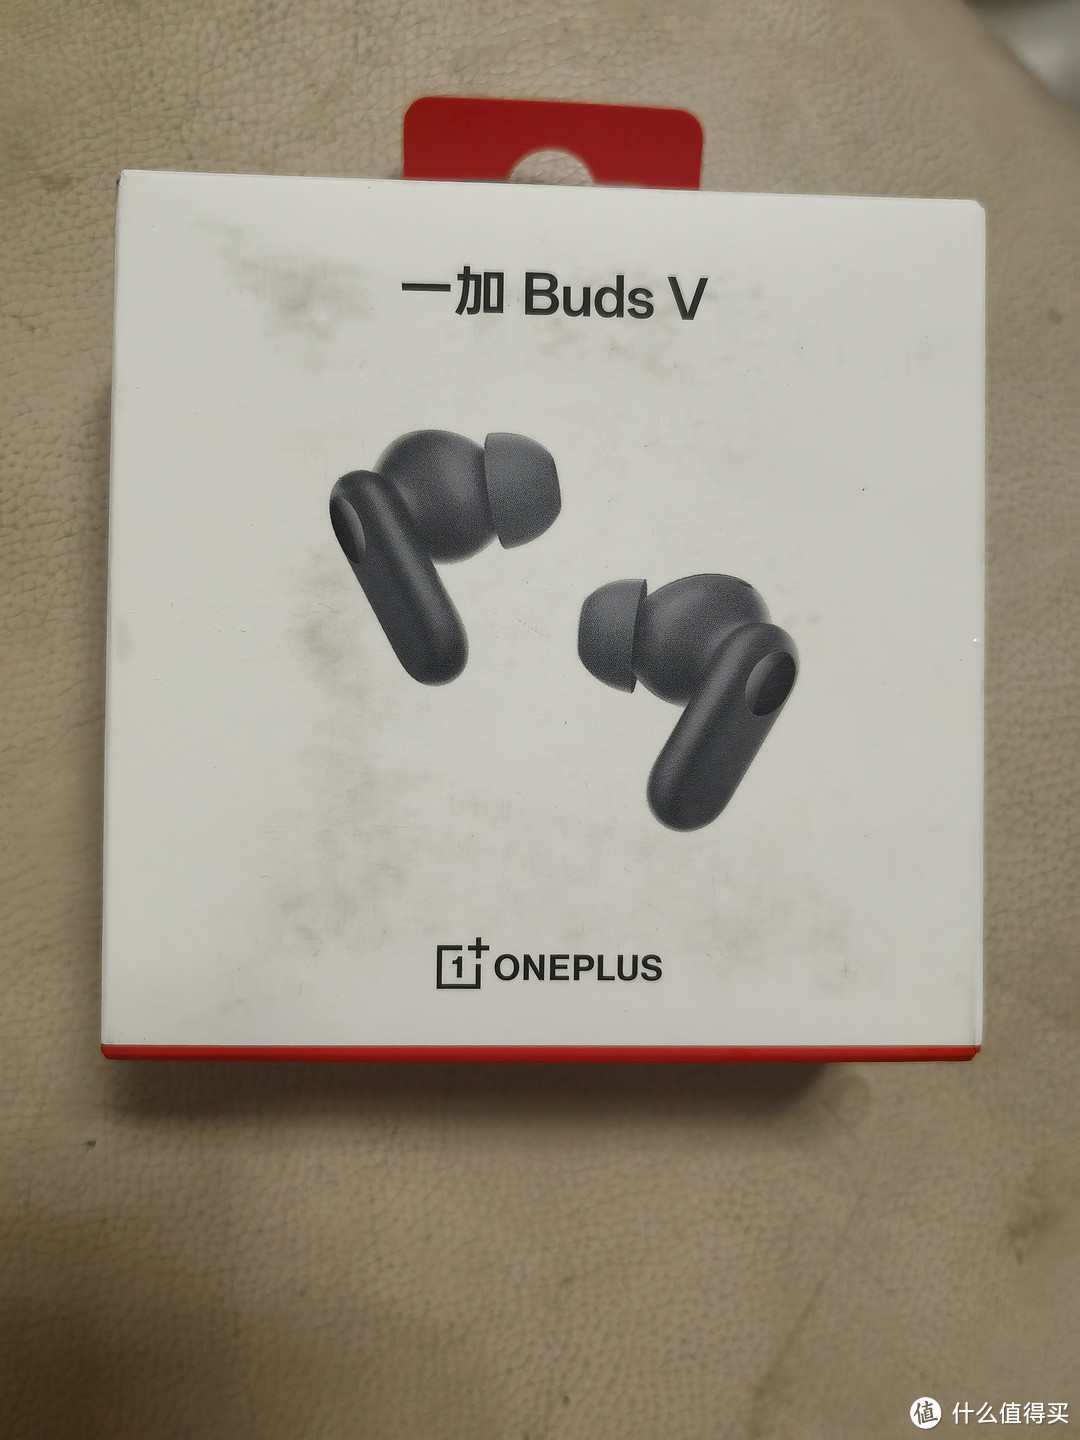 一加 Buds V 真无线蓝牙耳机拆箱使用测评